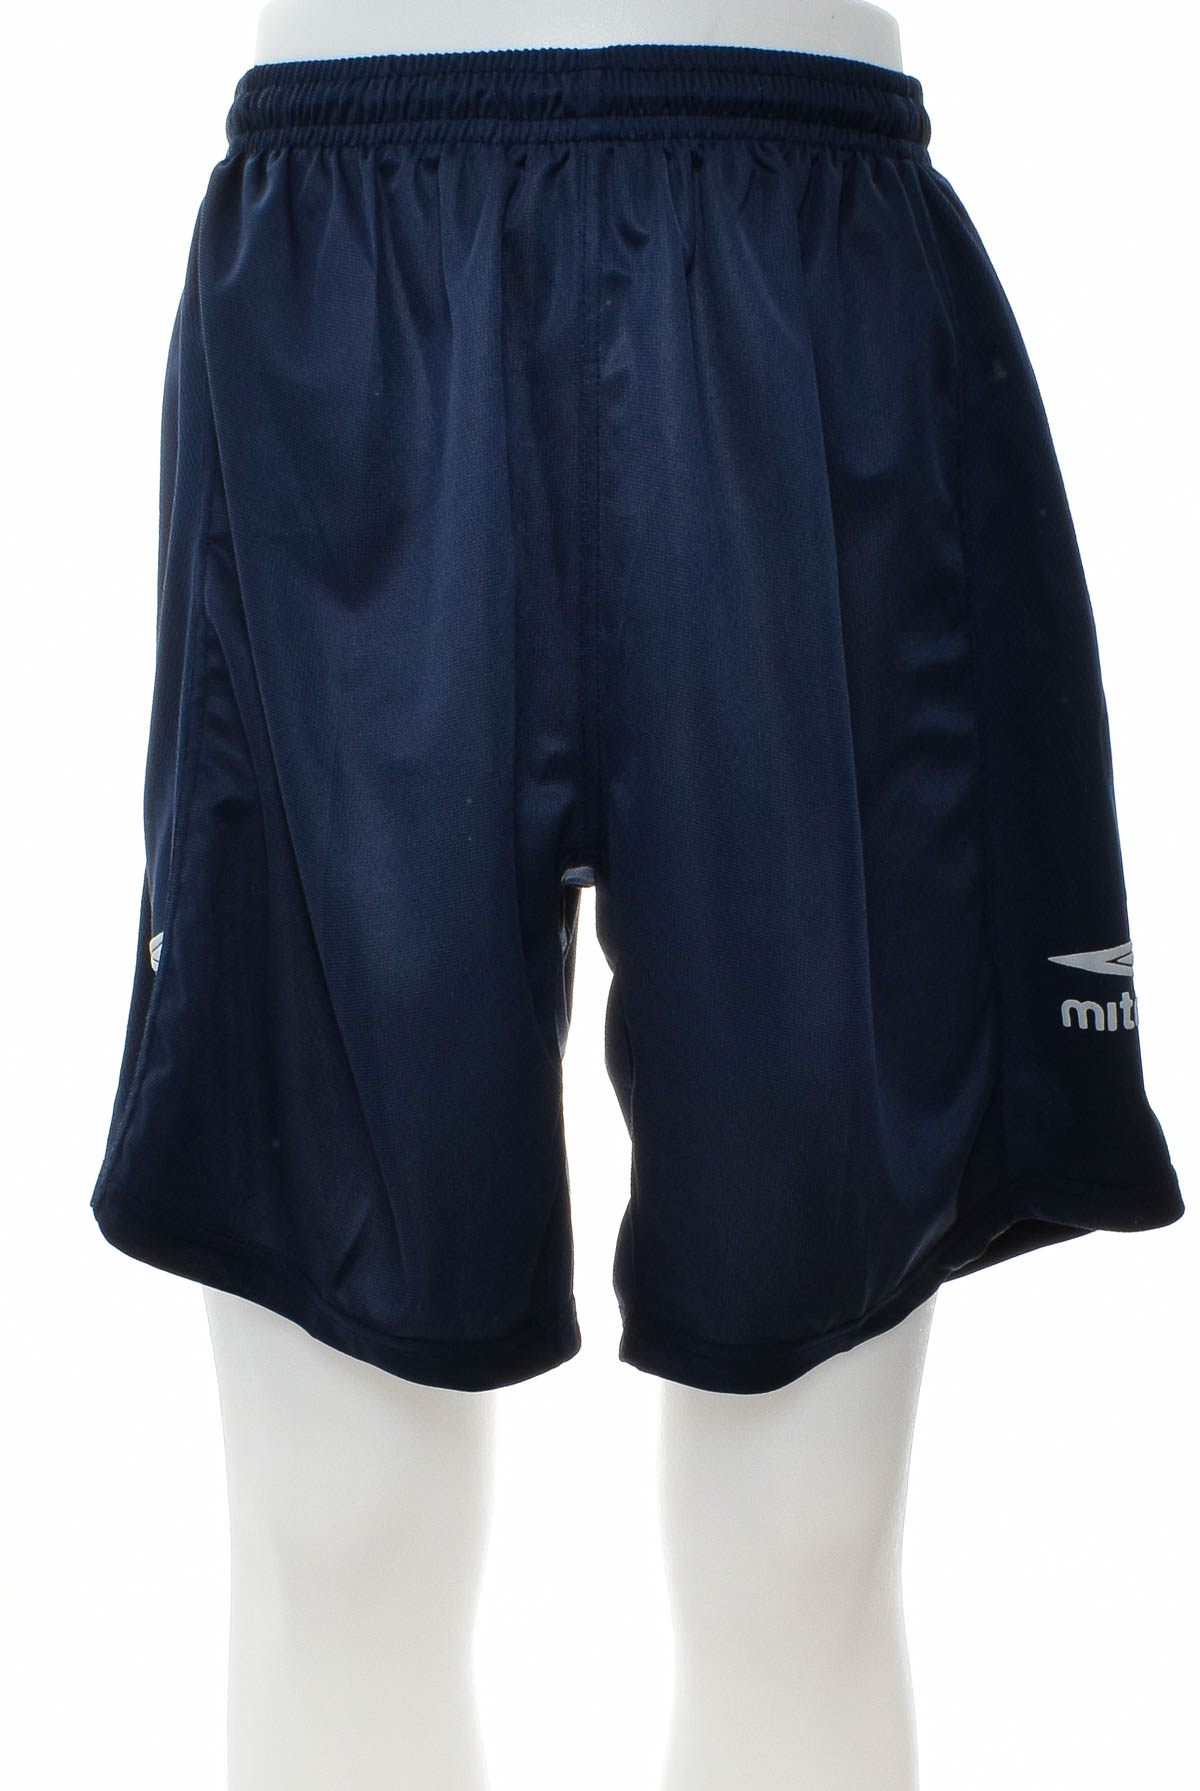 Men's shorts - Mitre - 0